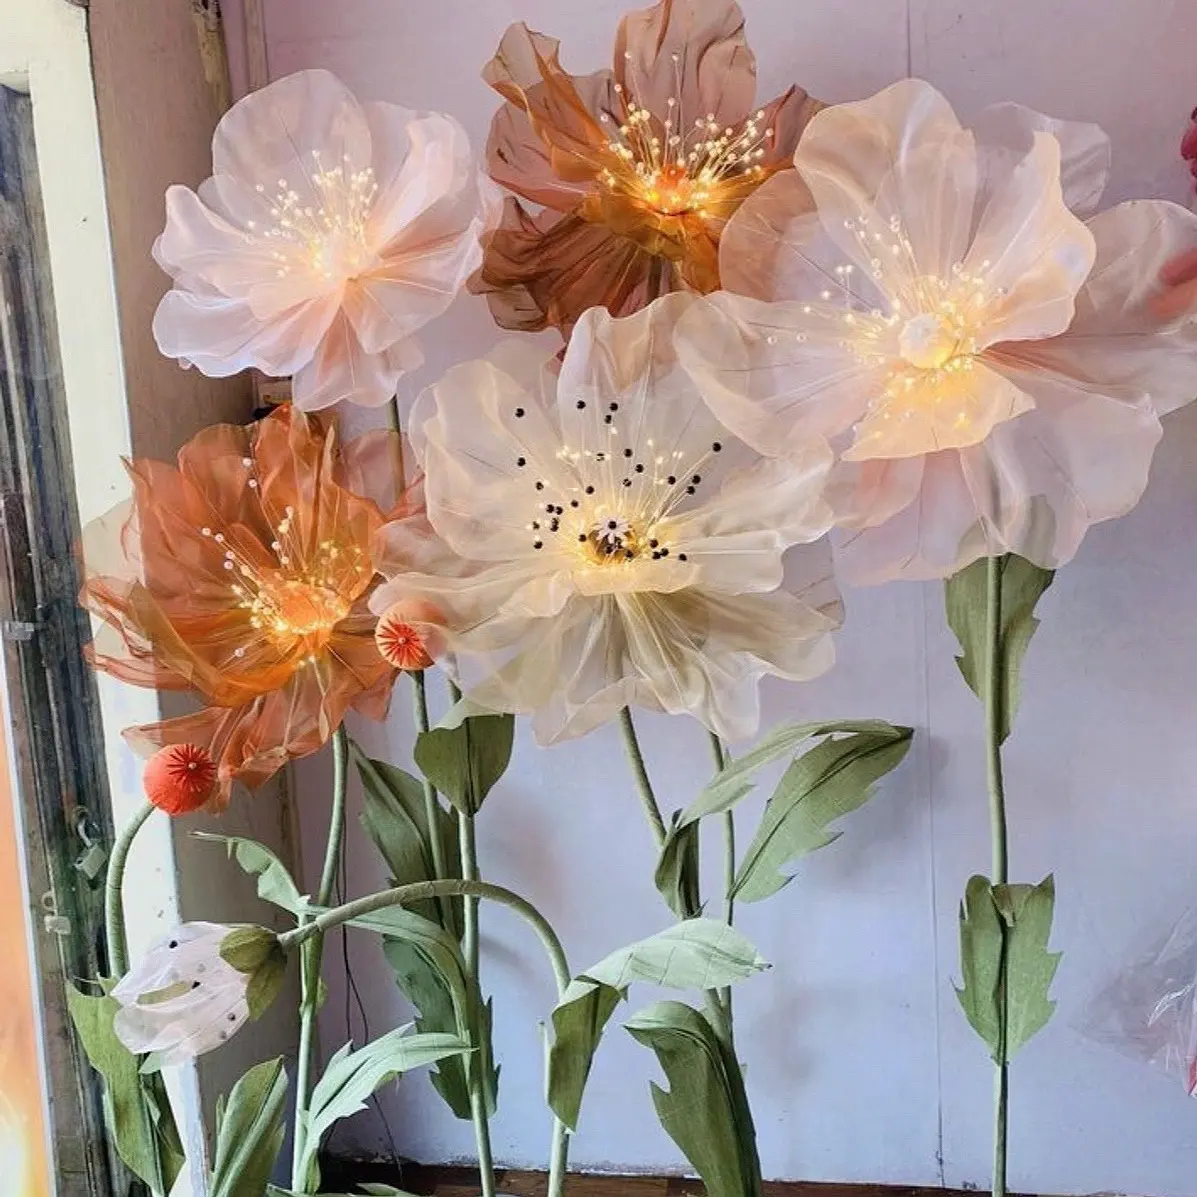 Fleurs géantes colorées faites à la main Organza Coquelicot Fleurs debout avec lumière LED lumineuse pour la décoration d'événements de mariage